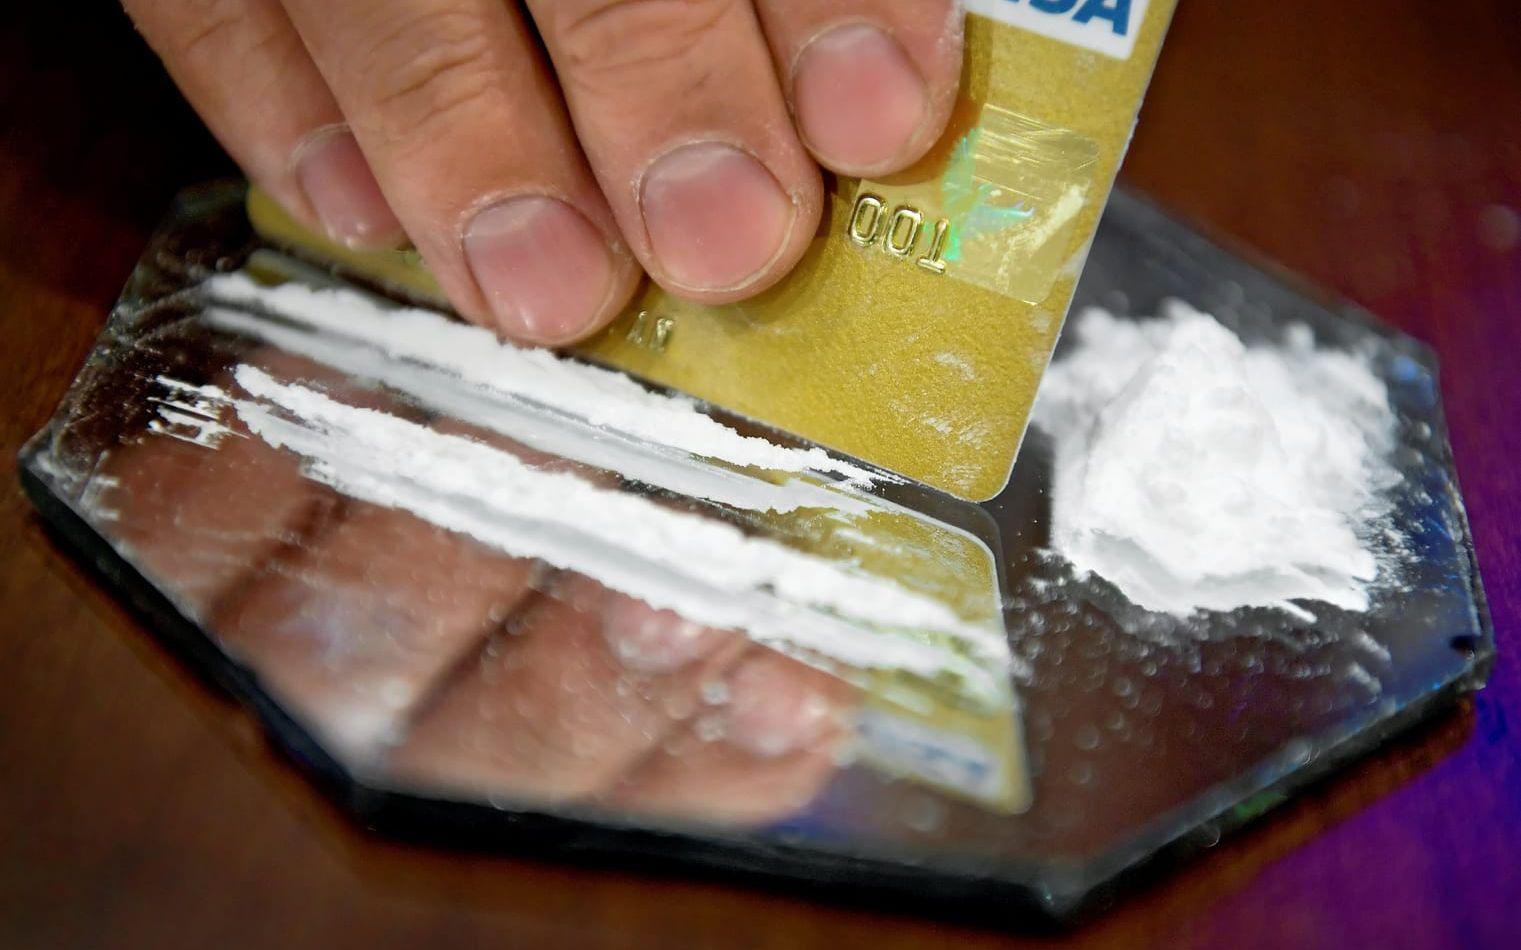 Förekomsten av kokain i Halmstads uteliv kan vara större än vad många tror, visar resultatet av granskningen. Arkivbild.